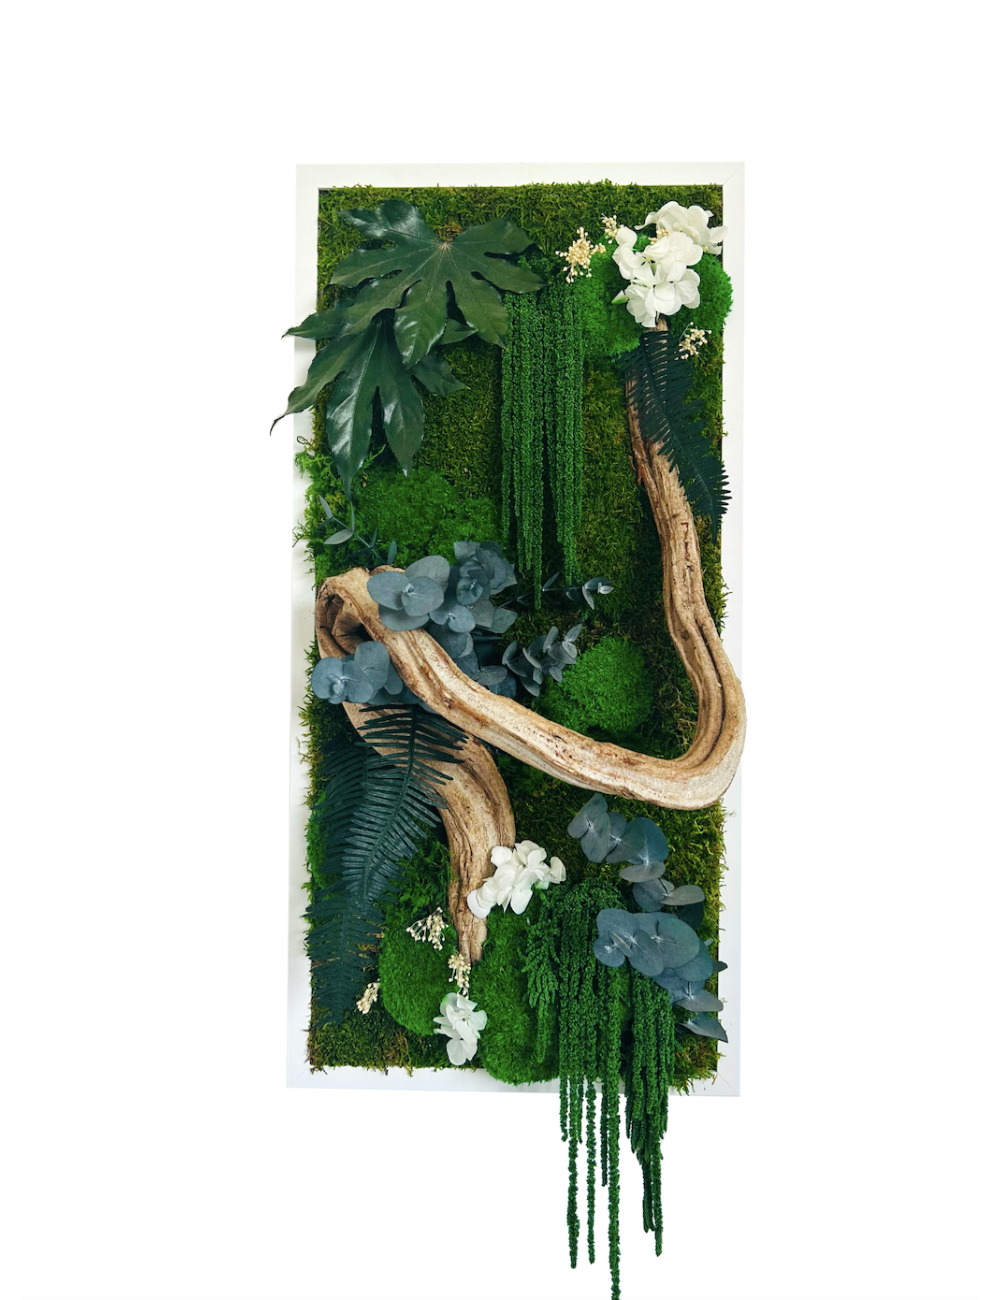 Tableau végétal avec végétaux verts et blancs et branche de bois